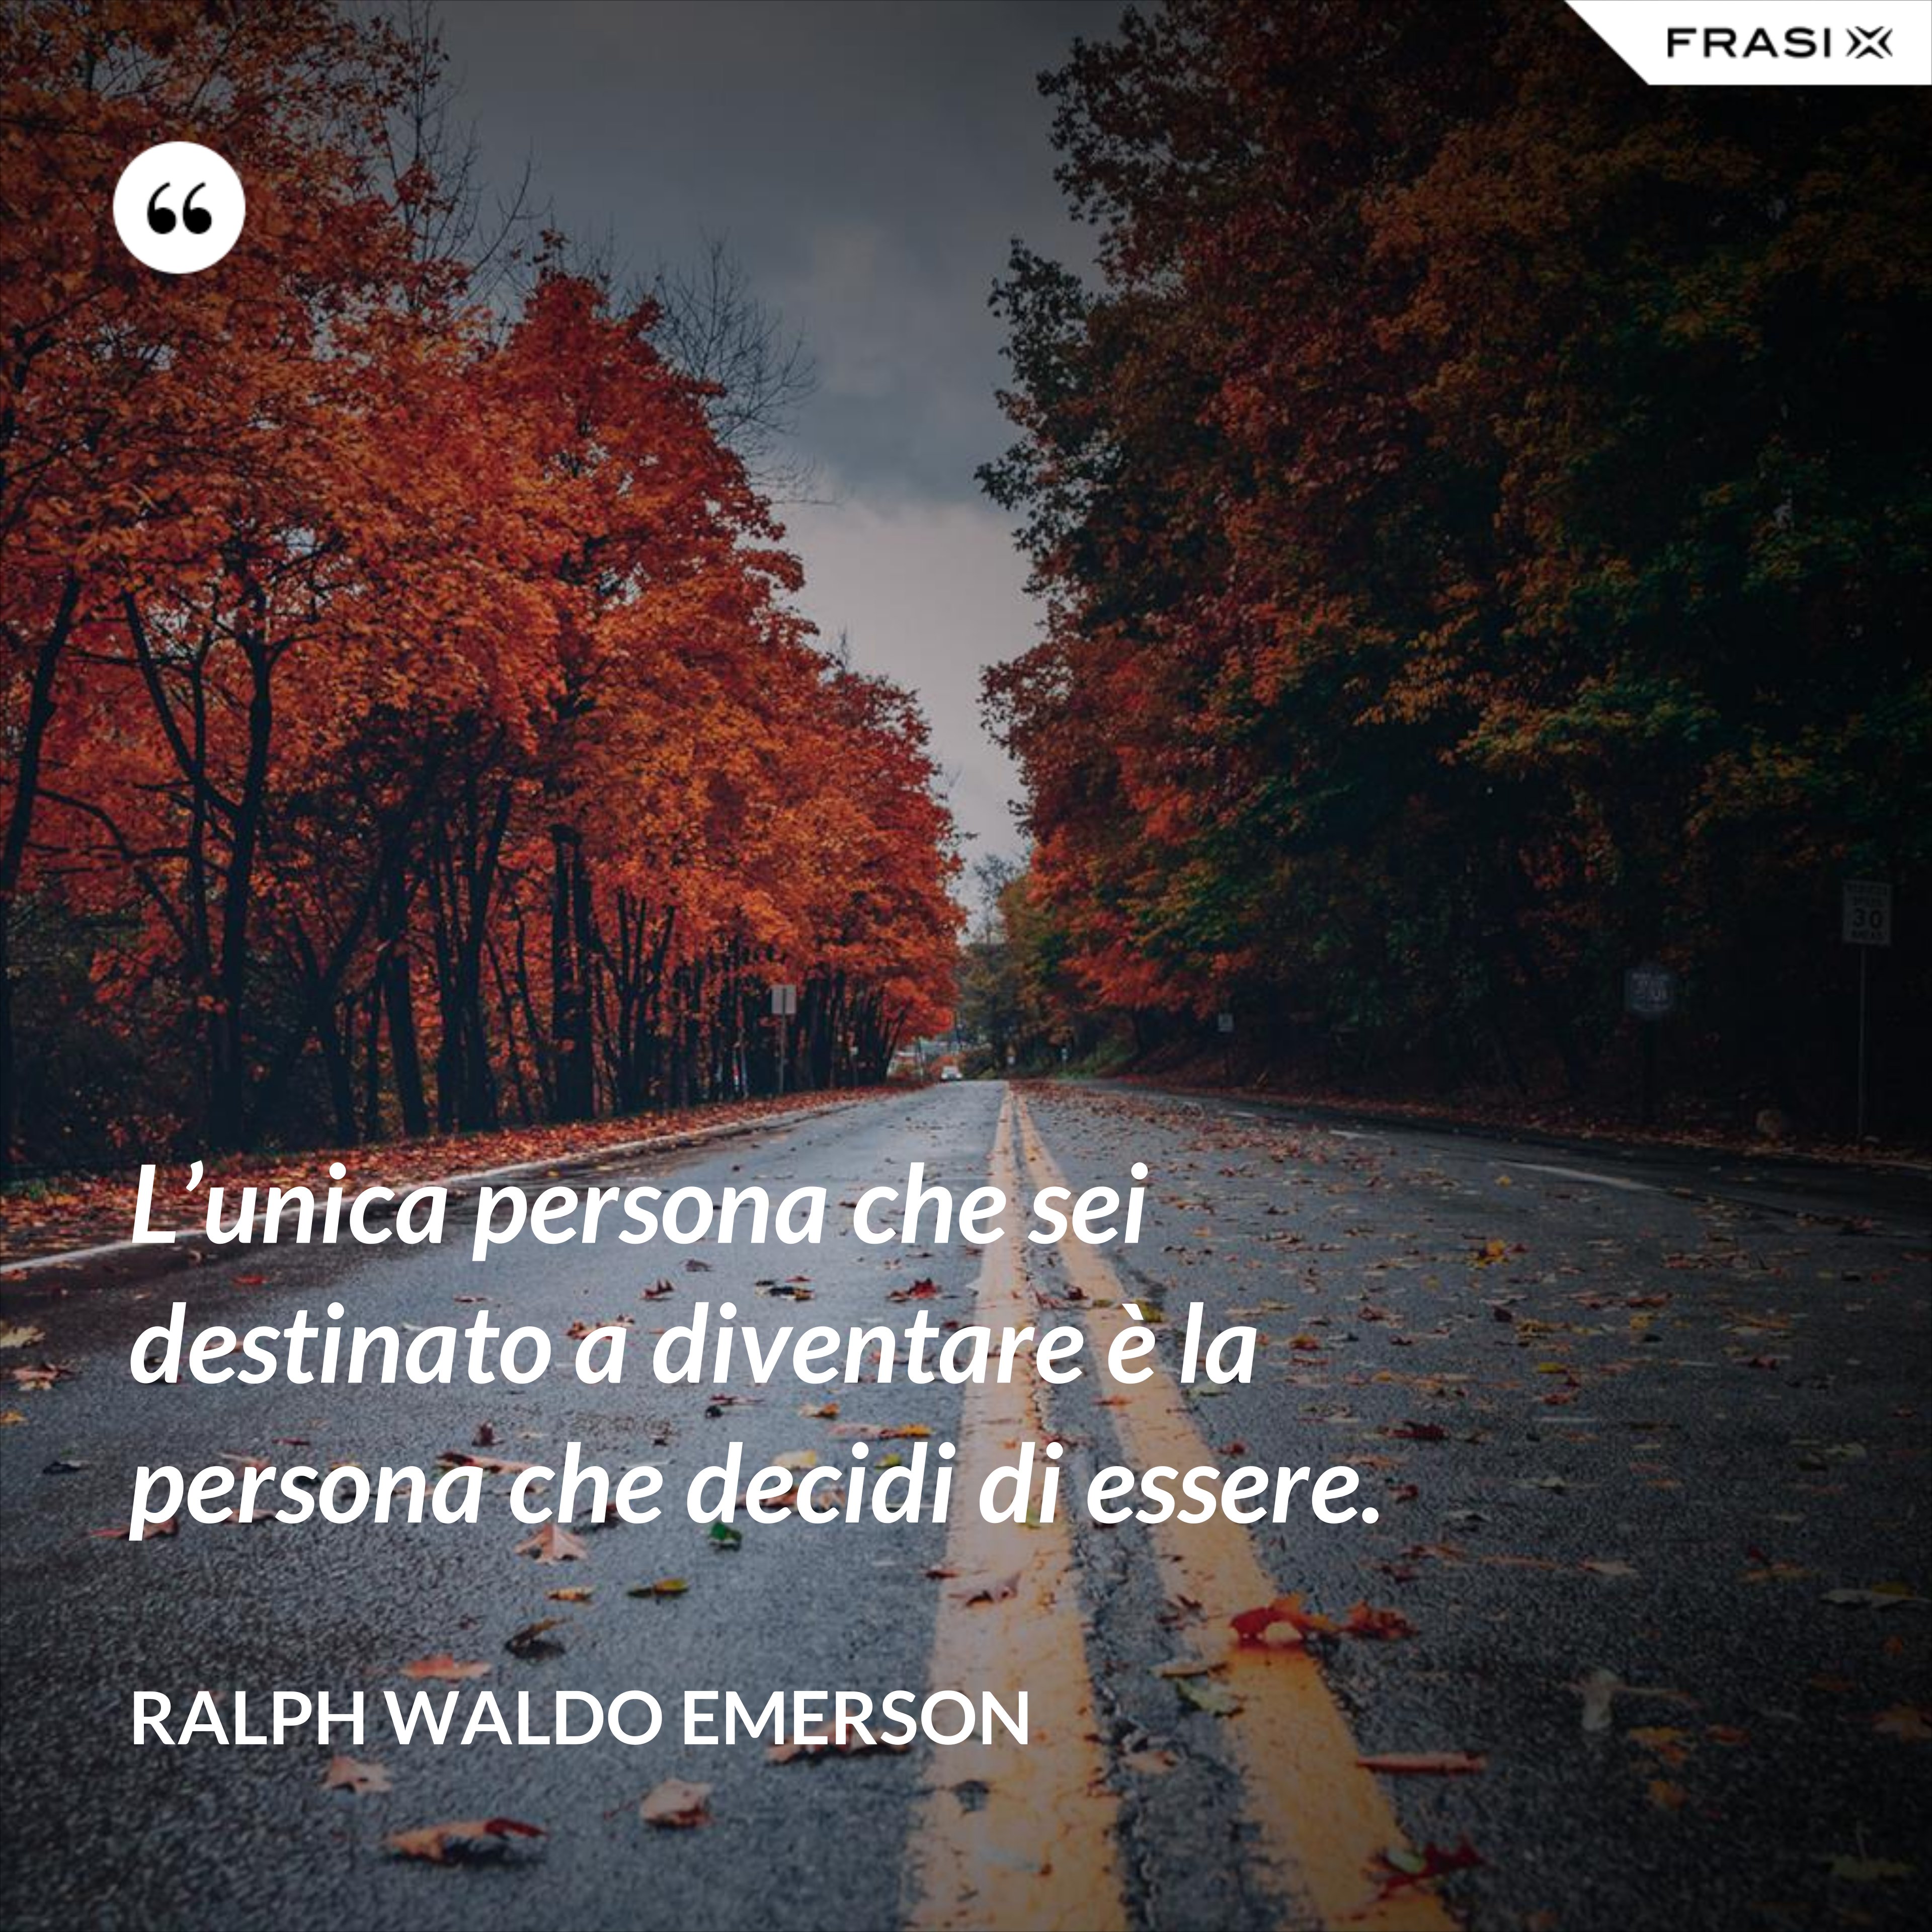 L’unica persona che sei destinato a diventare è la persona che decidi di essere. - Ralph Waldo Emerson